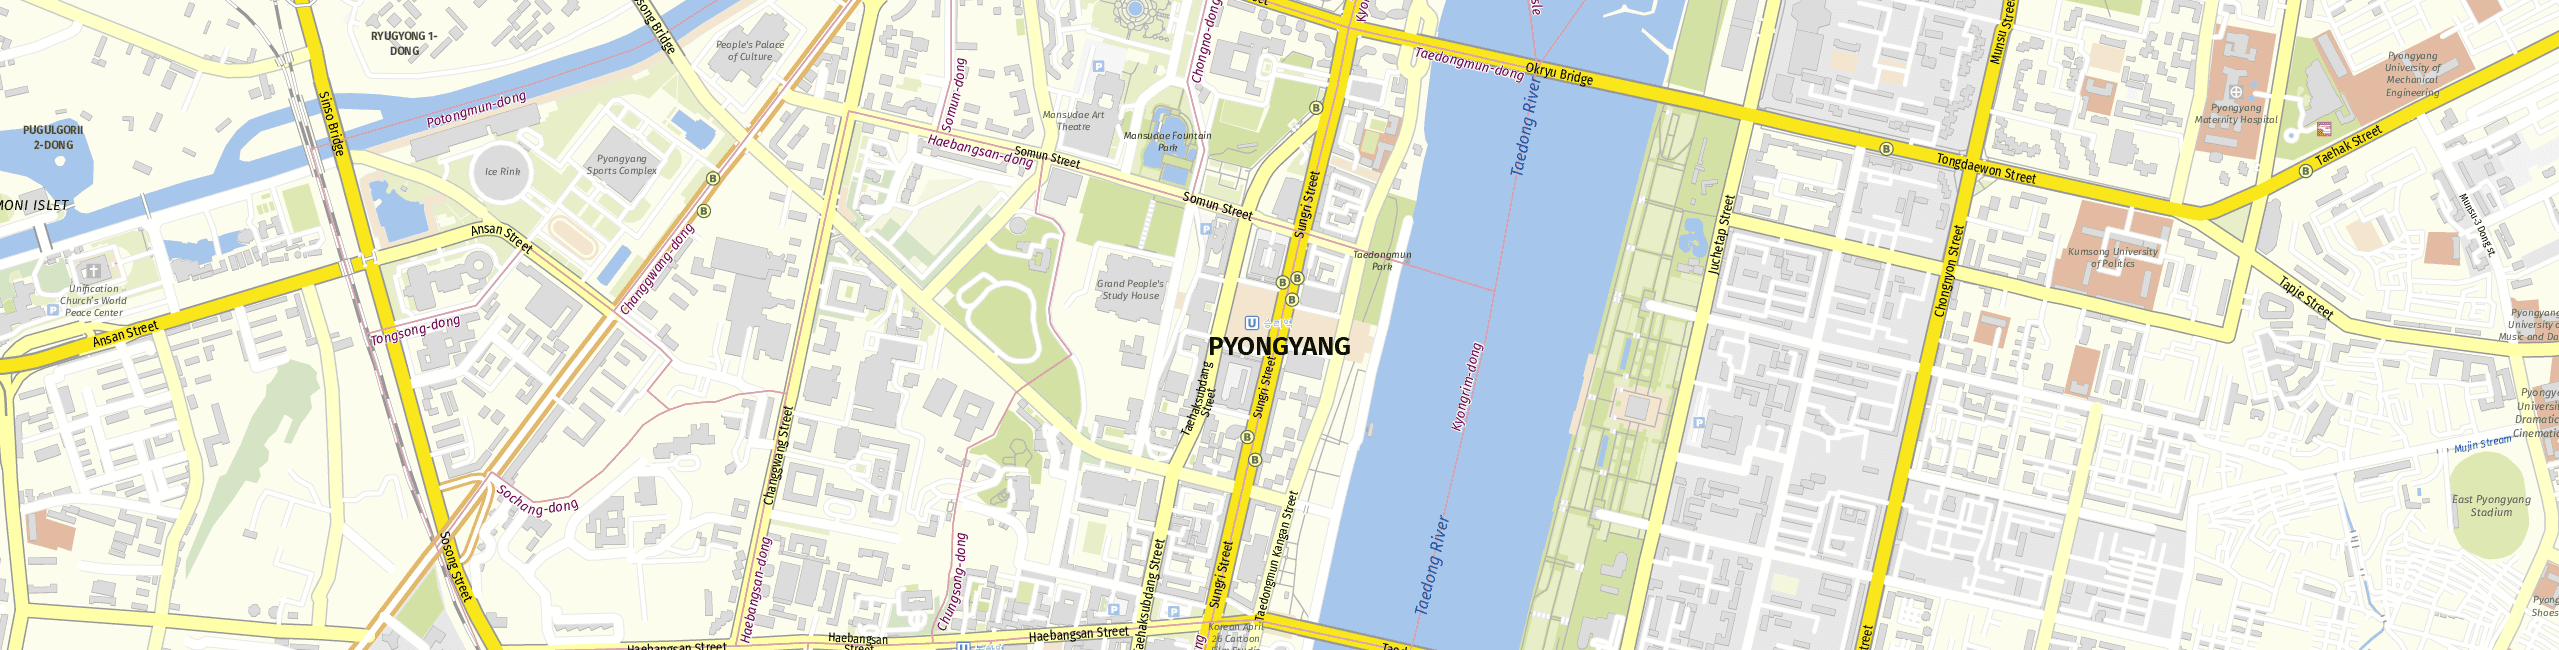 Stadtplan Pjöngjang zum Downloaden.